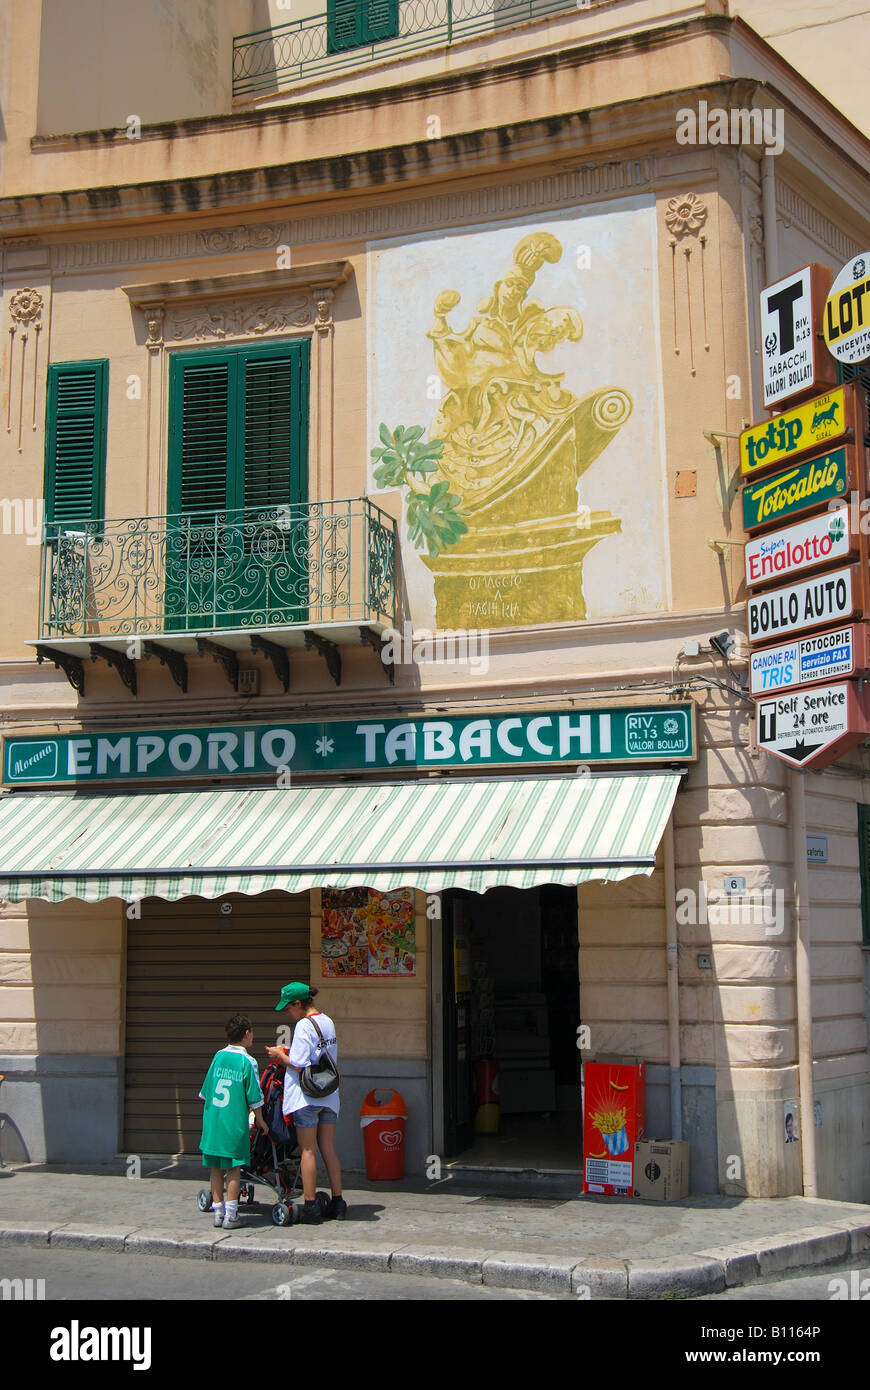 Tobacconist shop, Citta di Bagheria, Piazza Garibaldi, Citta di Bagheria, Palermo Province, Sicily, Italy Stock Photo